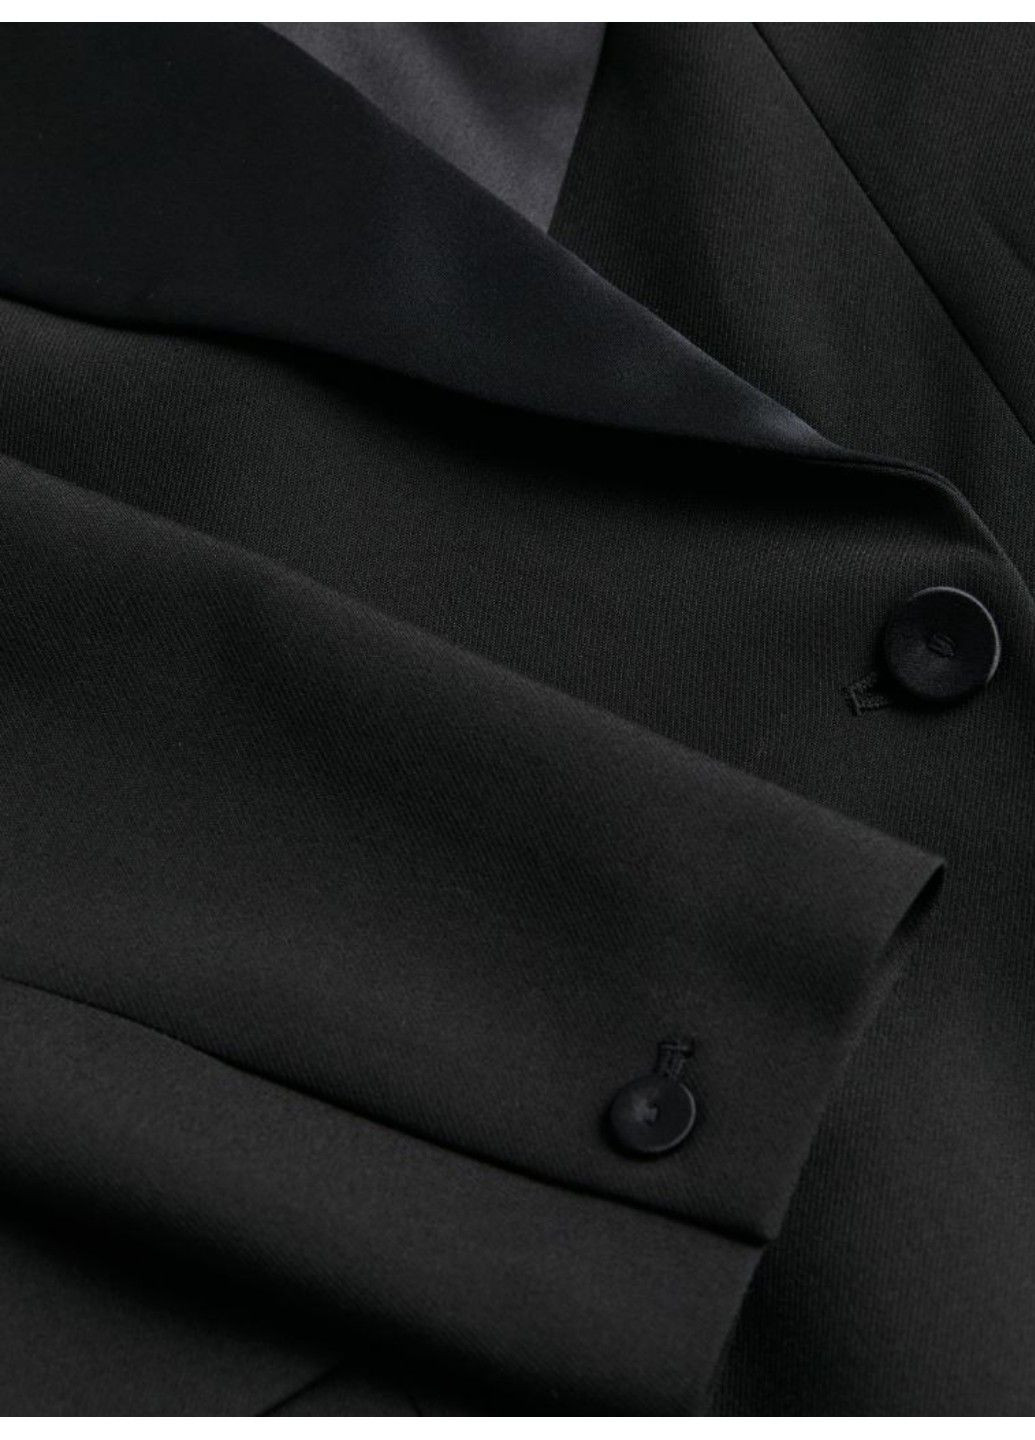 Черное деловое женское платье-пиджак приталенного кроя н&м (56543) м черное H&M